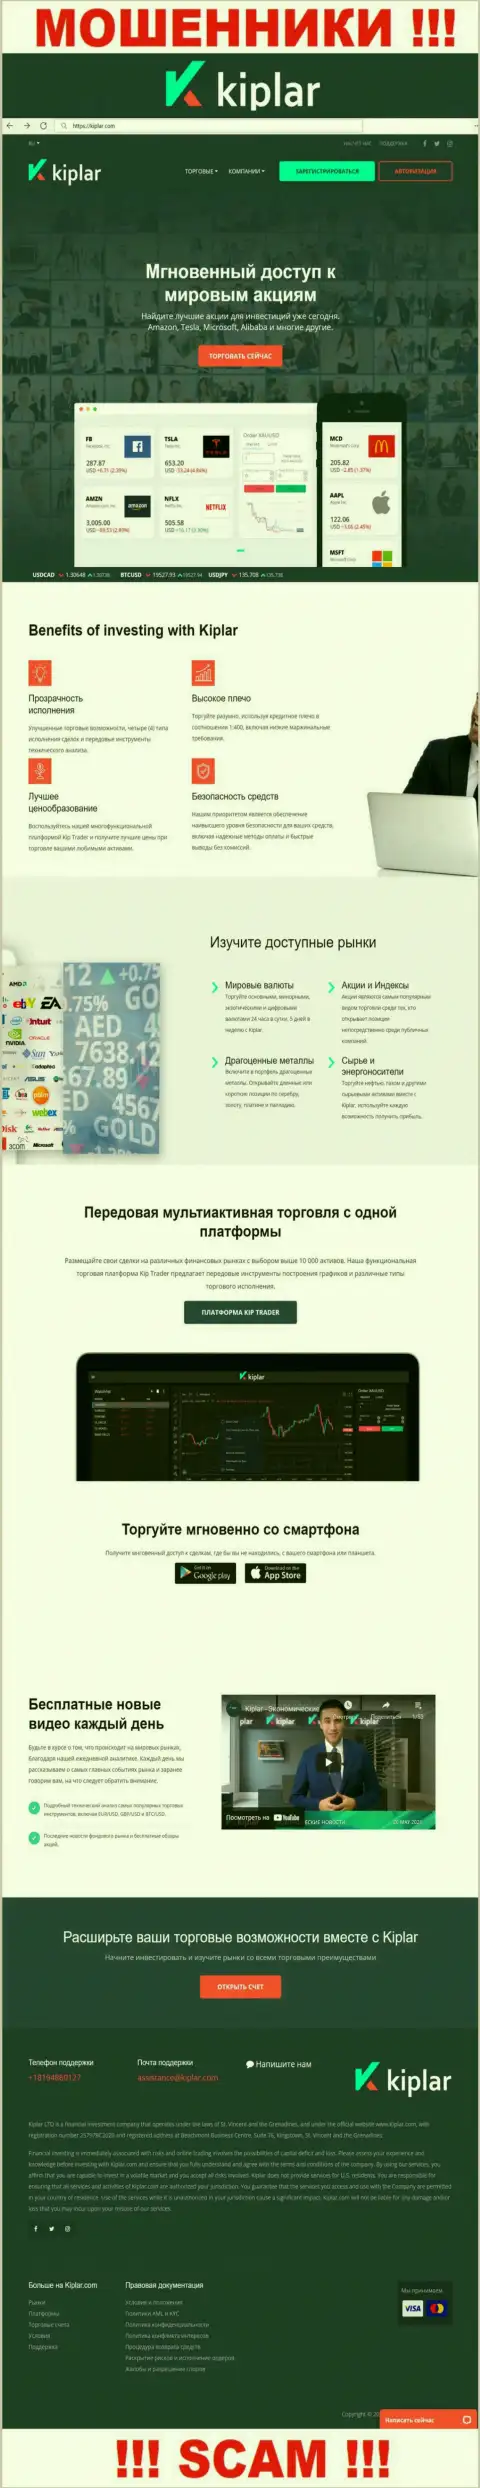 Киплар Ком - официальный информационный портал ворюг Kiplar Ltd